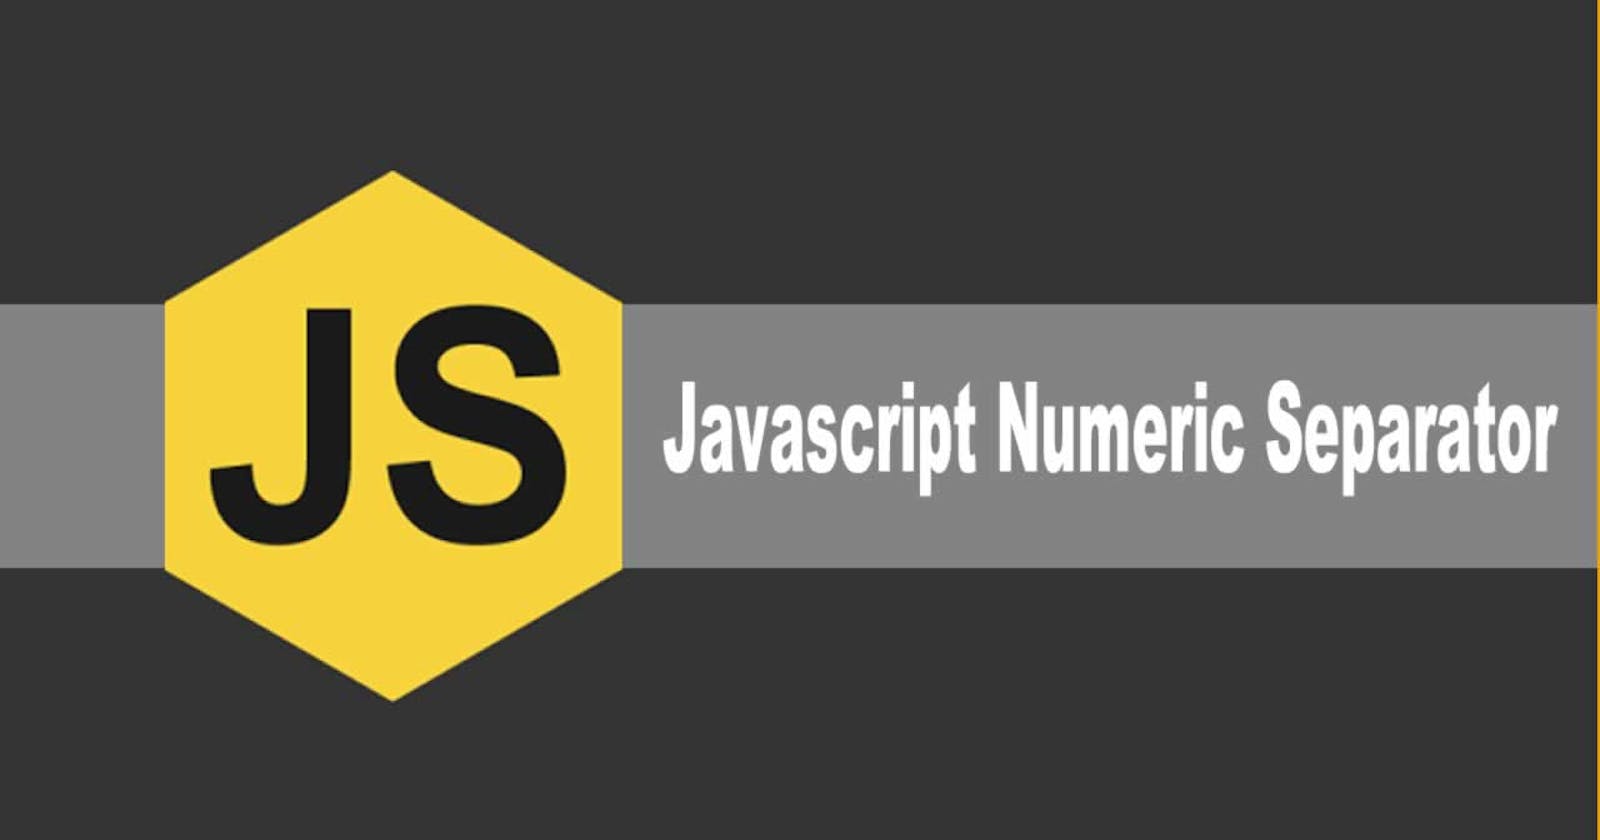 What Are Numeric Separators in JavaScript?